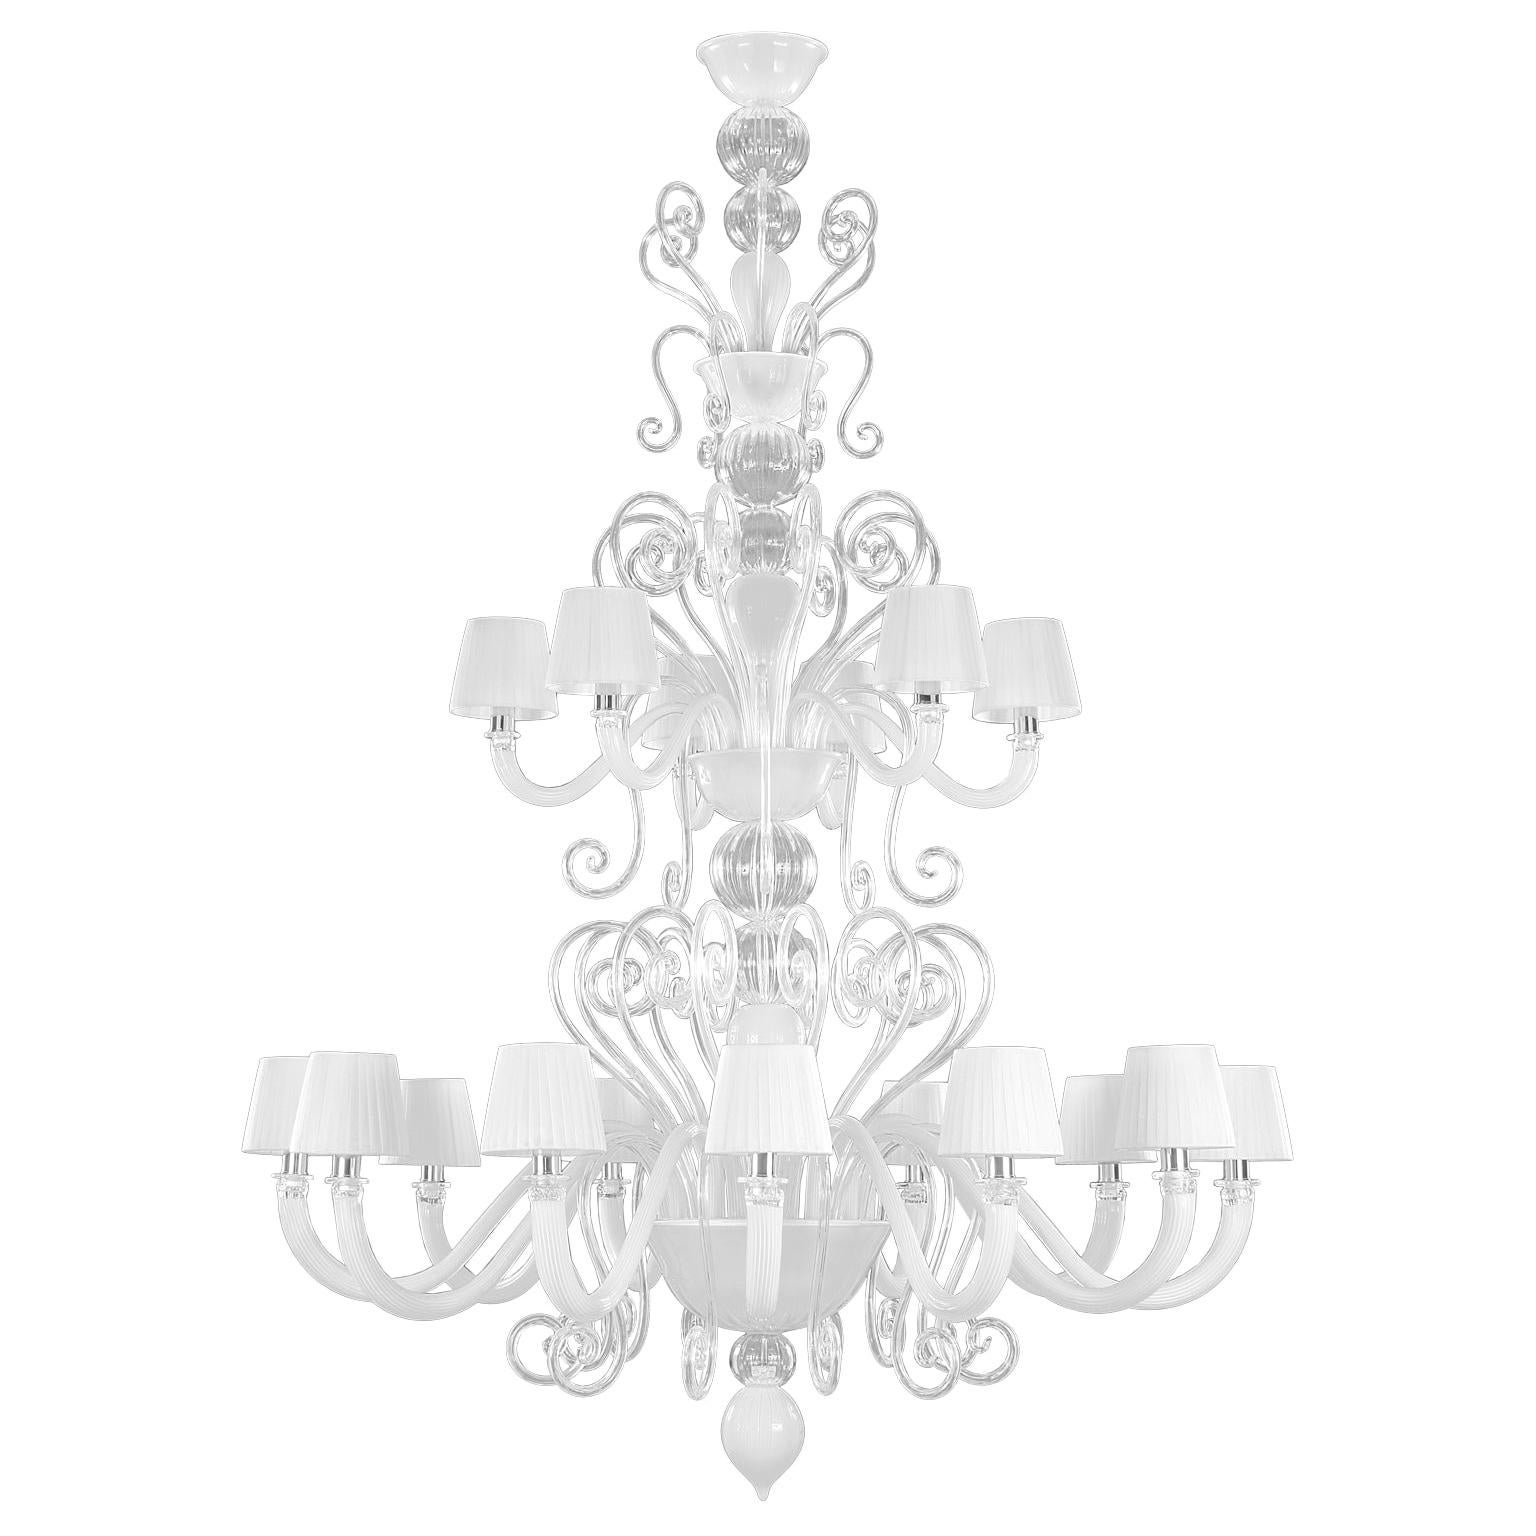 Gatsby von Multiforme, kunstvoller Kronleuchter mit 12+6 Armen aus weißem Kristall-Muranoglas